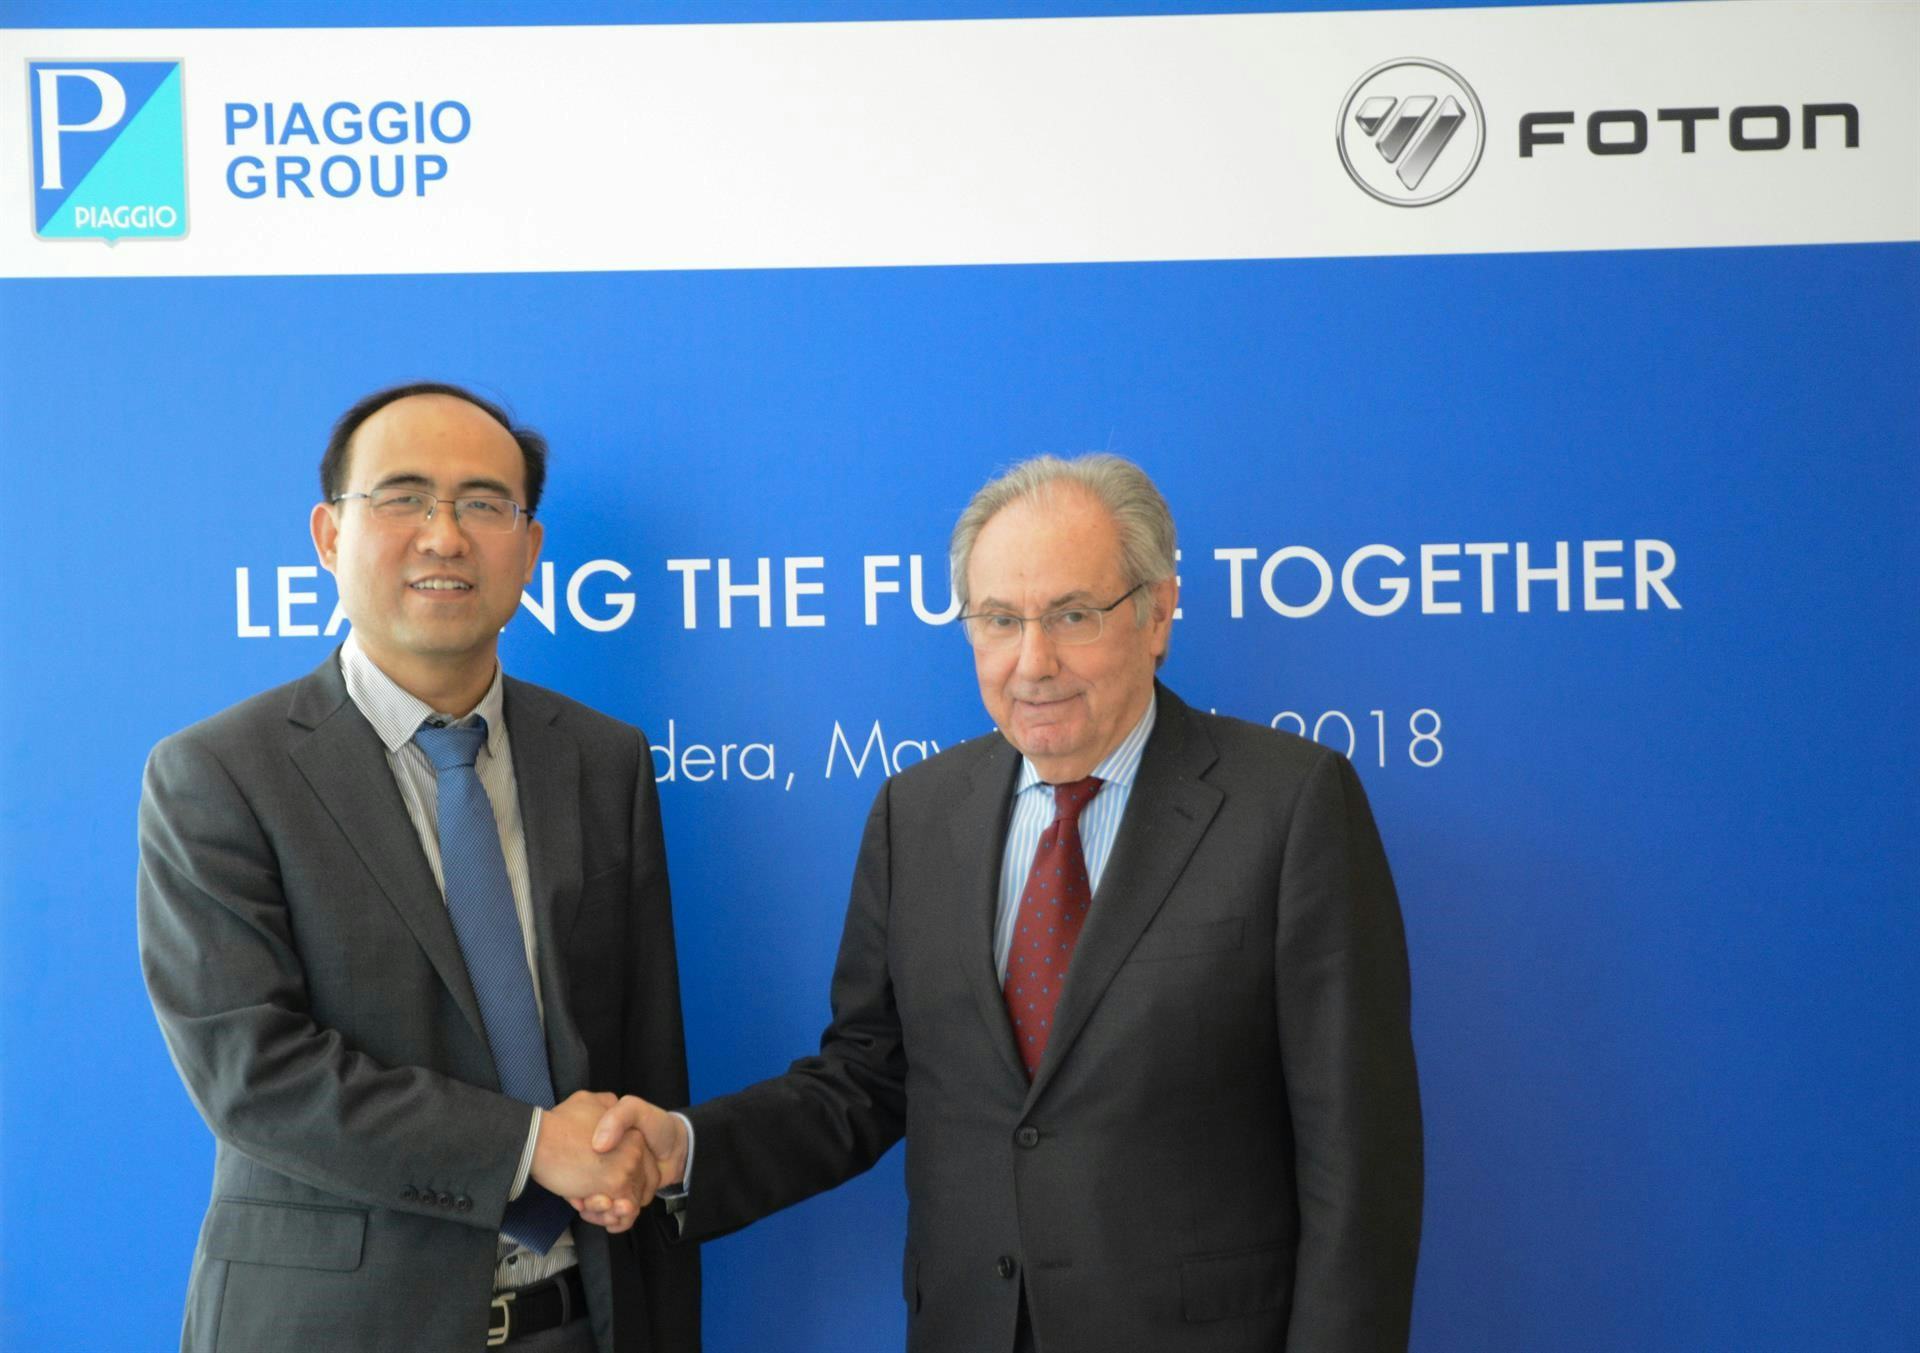 Roberto Colaninno, Voorzitter en CEO van Piaggio & C. S.p.A. (PIA.MI), en de heer Chang Rui, Vicevoorzitter van Foton Motor Group en Voorzitter van Foton International tekenden de definitieve overeenkomst.